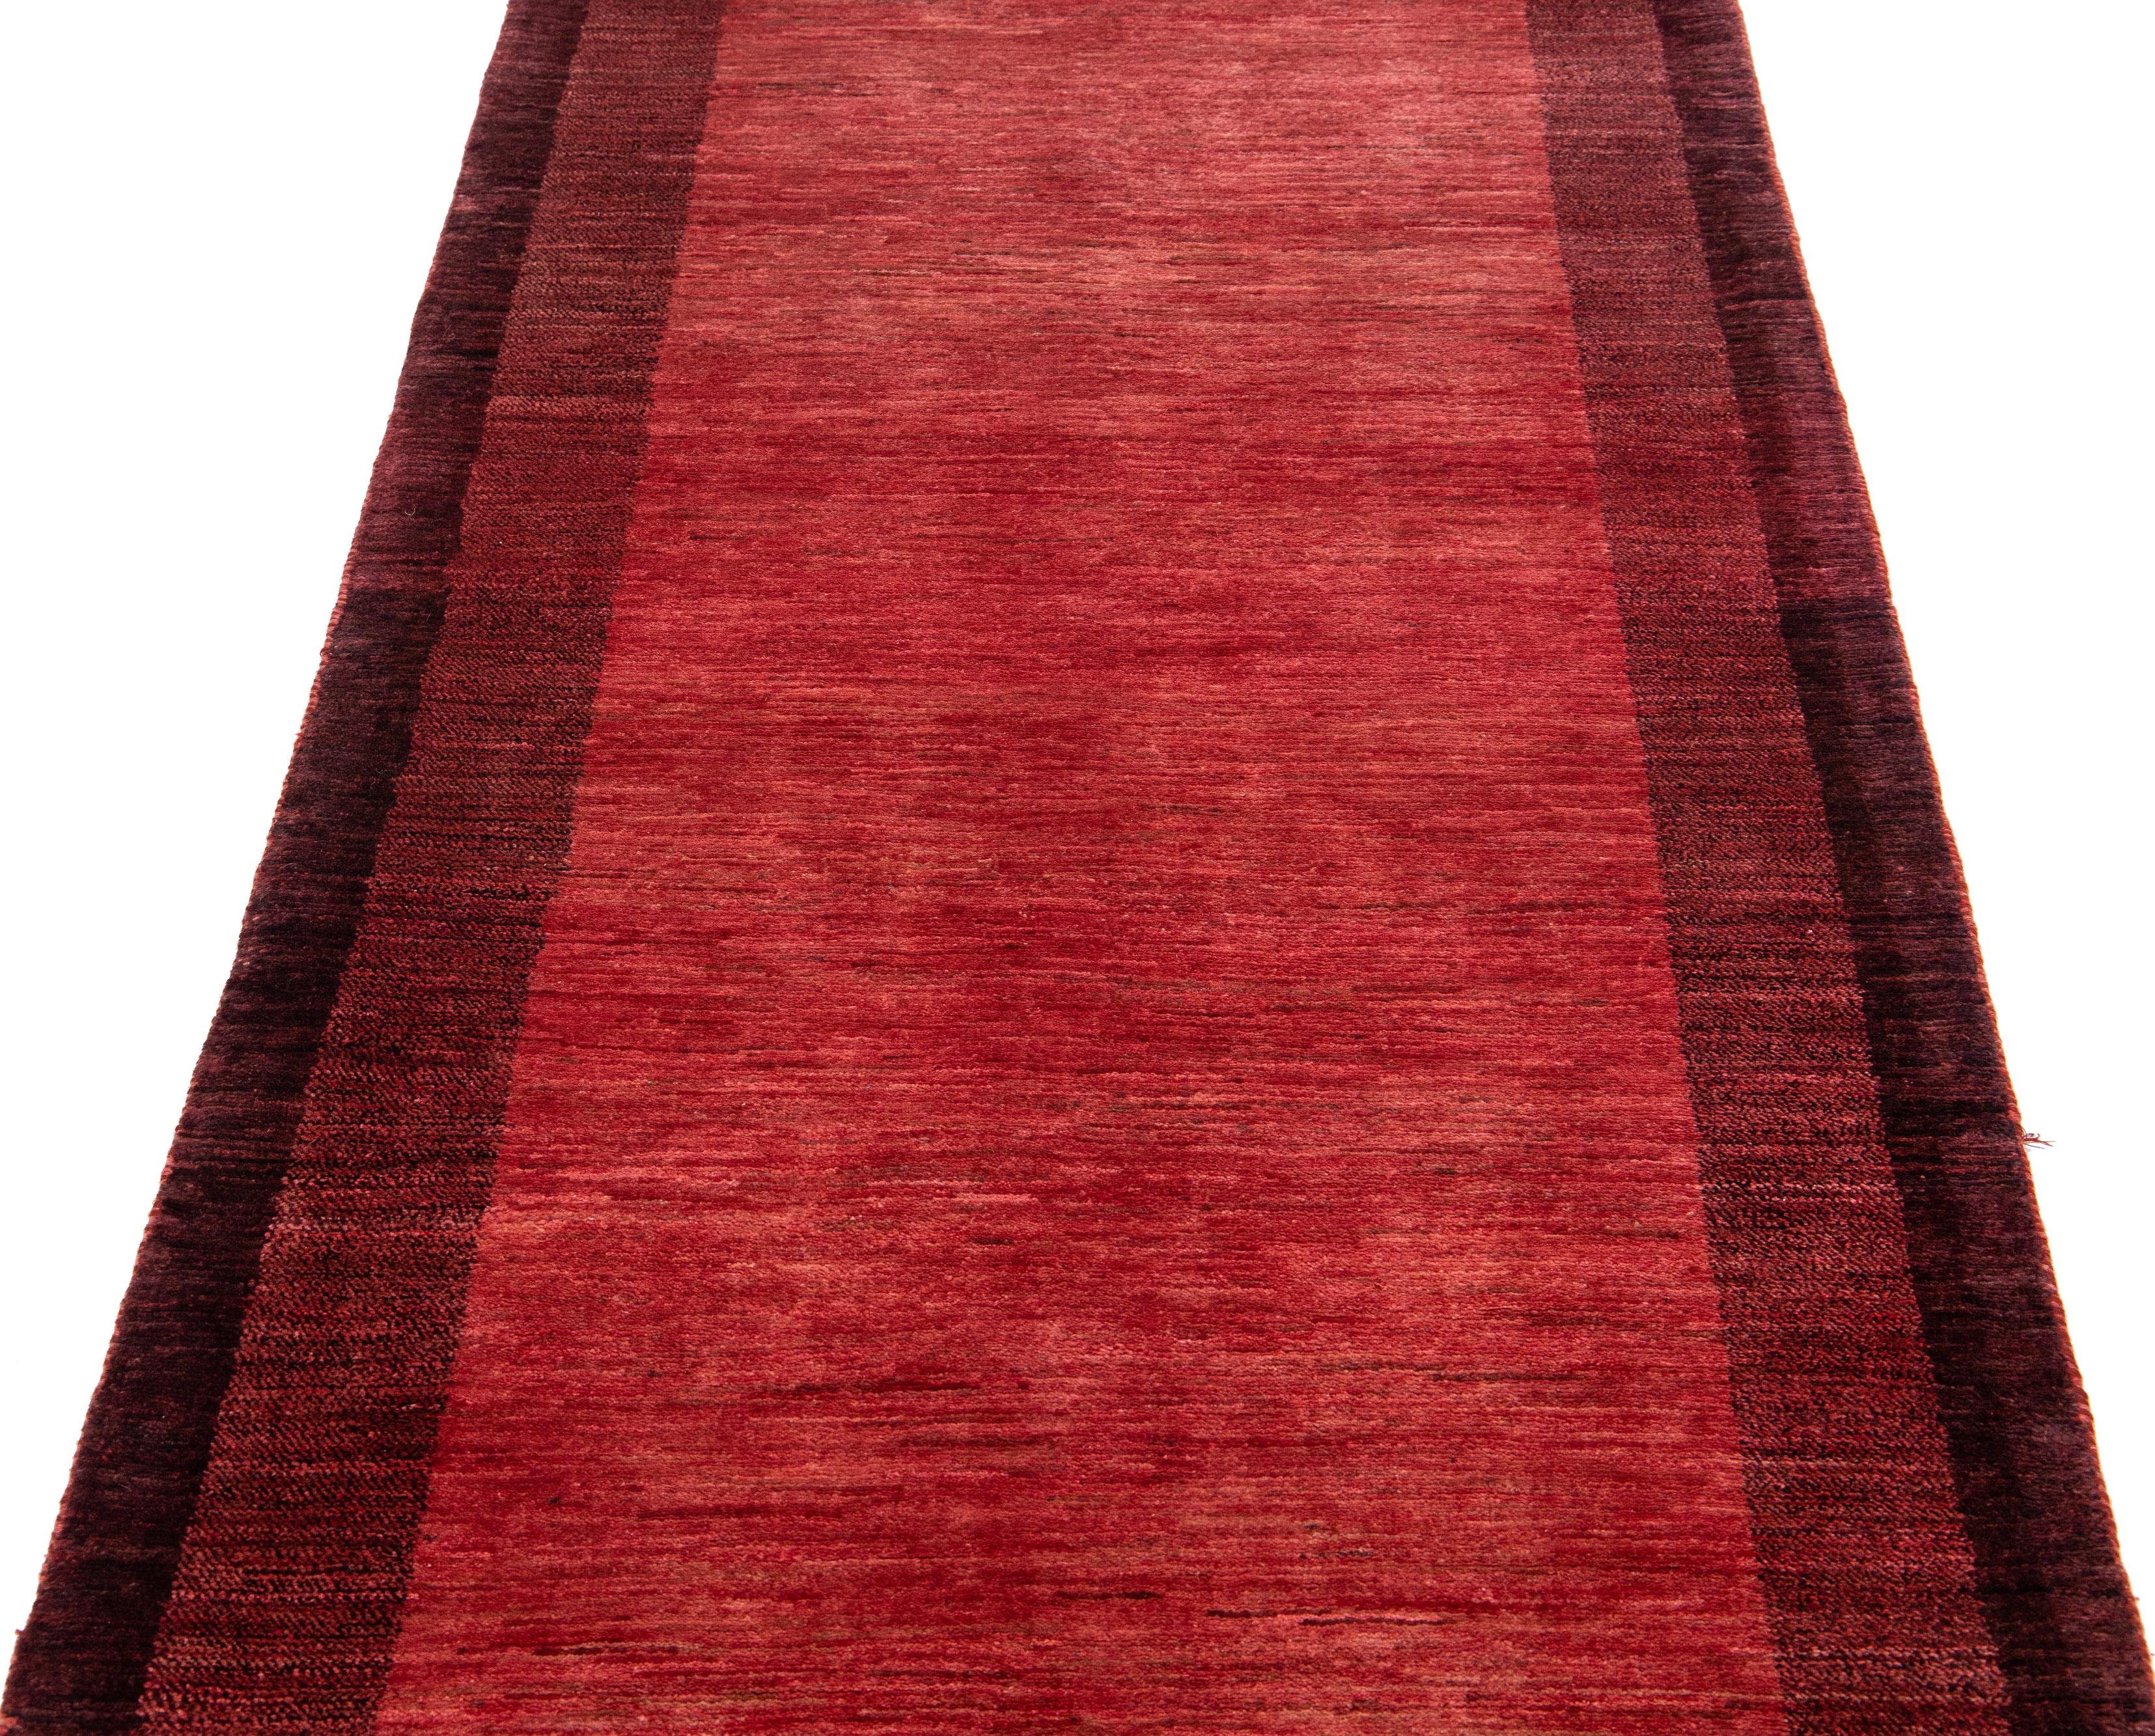 Schöner, moderner, handgewebter Woll-Läufer im Gabbeh-Stil mit rotem Farbfeld. Dieser Perserteppich hat ein wunderschönes minimalistisches Design mit burgunderroten Akzenten.

Dieser Teppich misst: 3'2